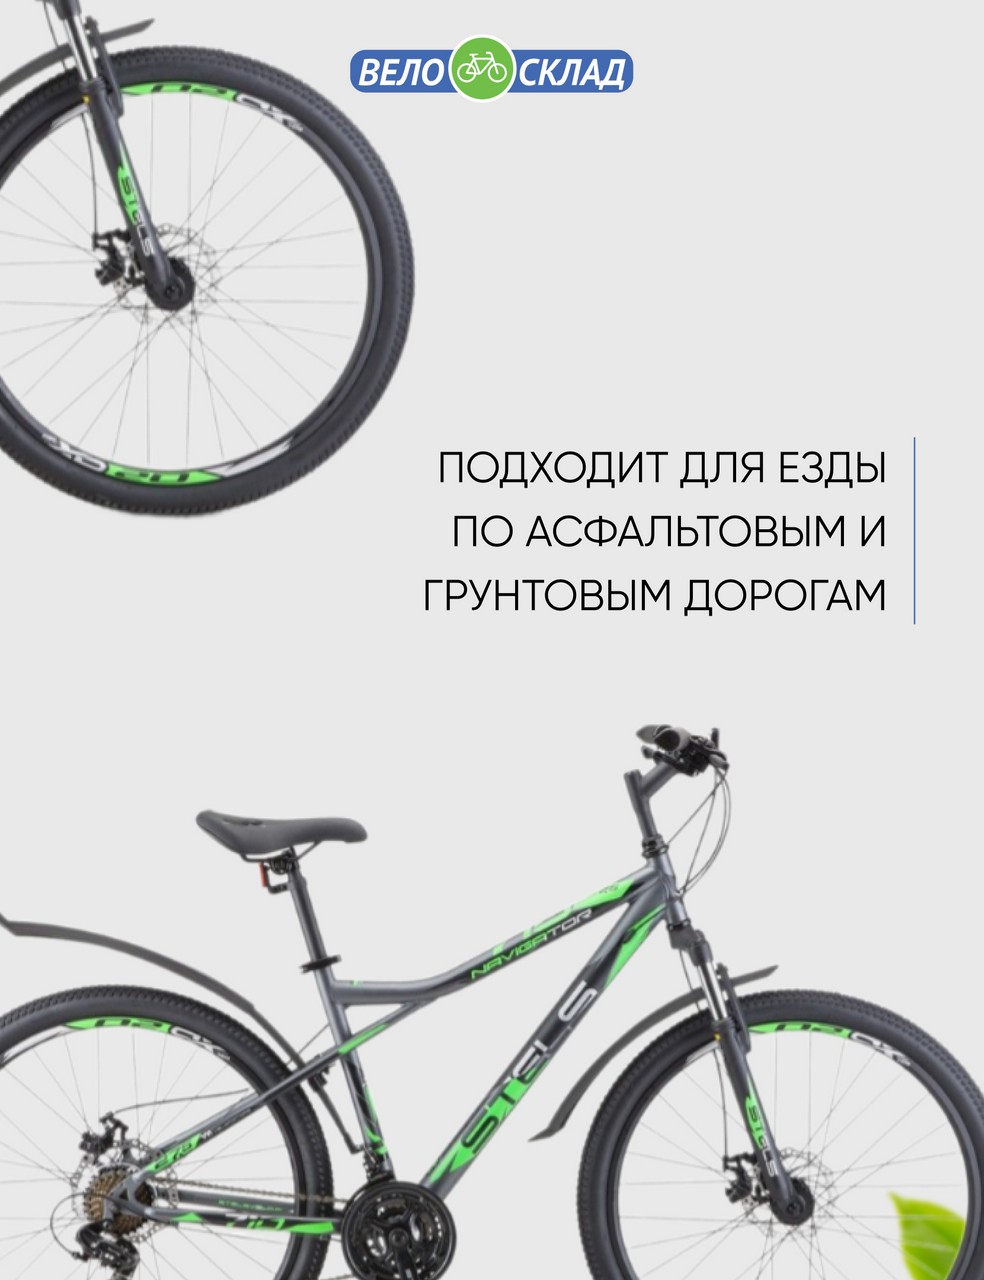 Горный велосипед Stels Navigator 710 MD 27.5 V020, год 2023, цвет Серебристый-Зеленый, ростовка 16